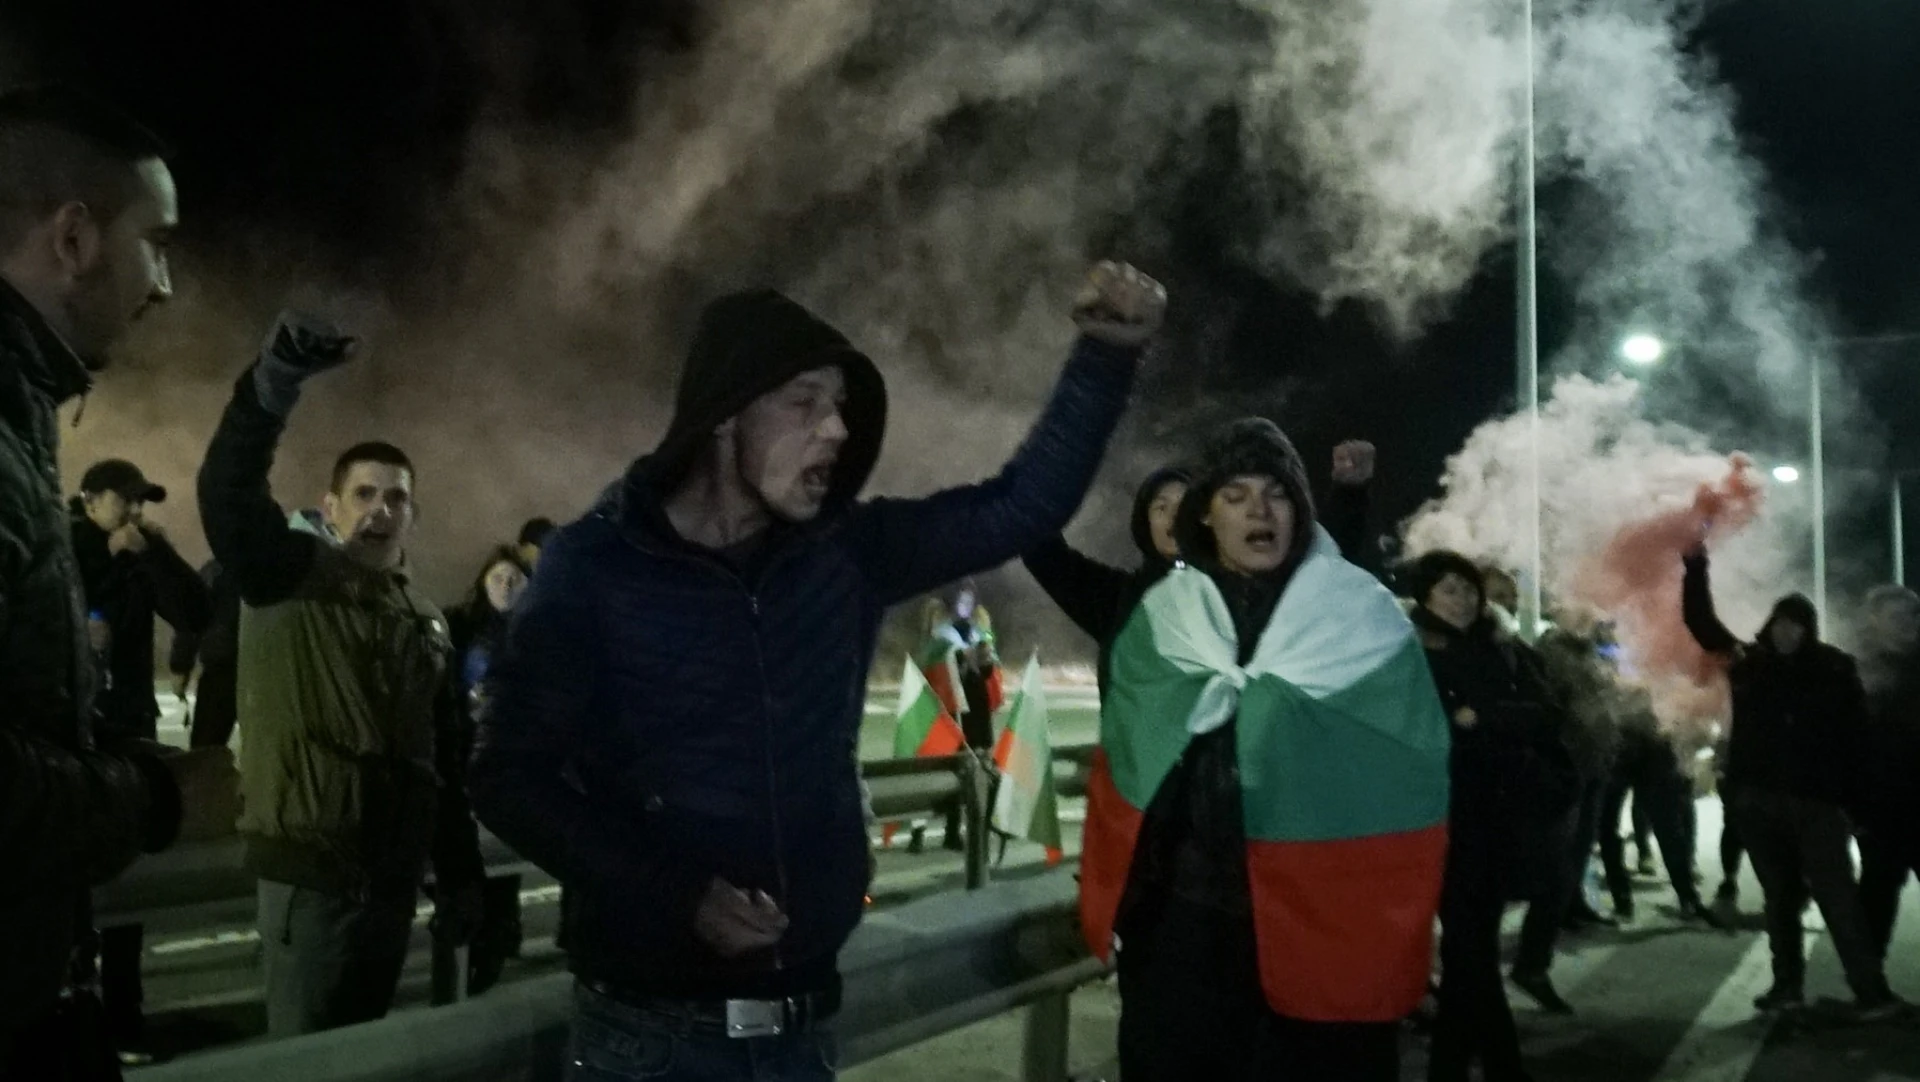 Протест в Перник